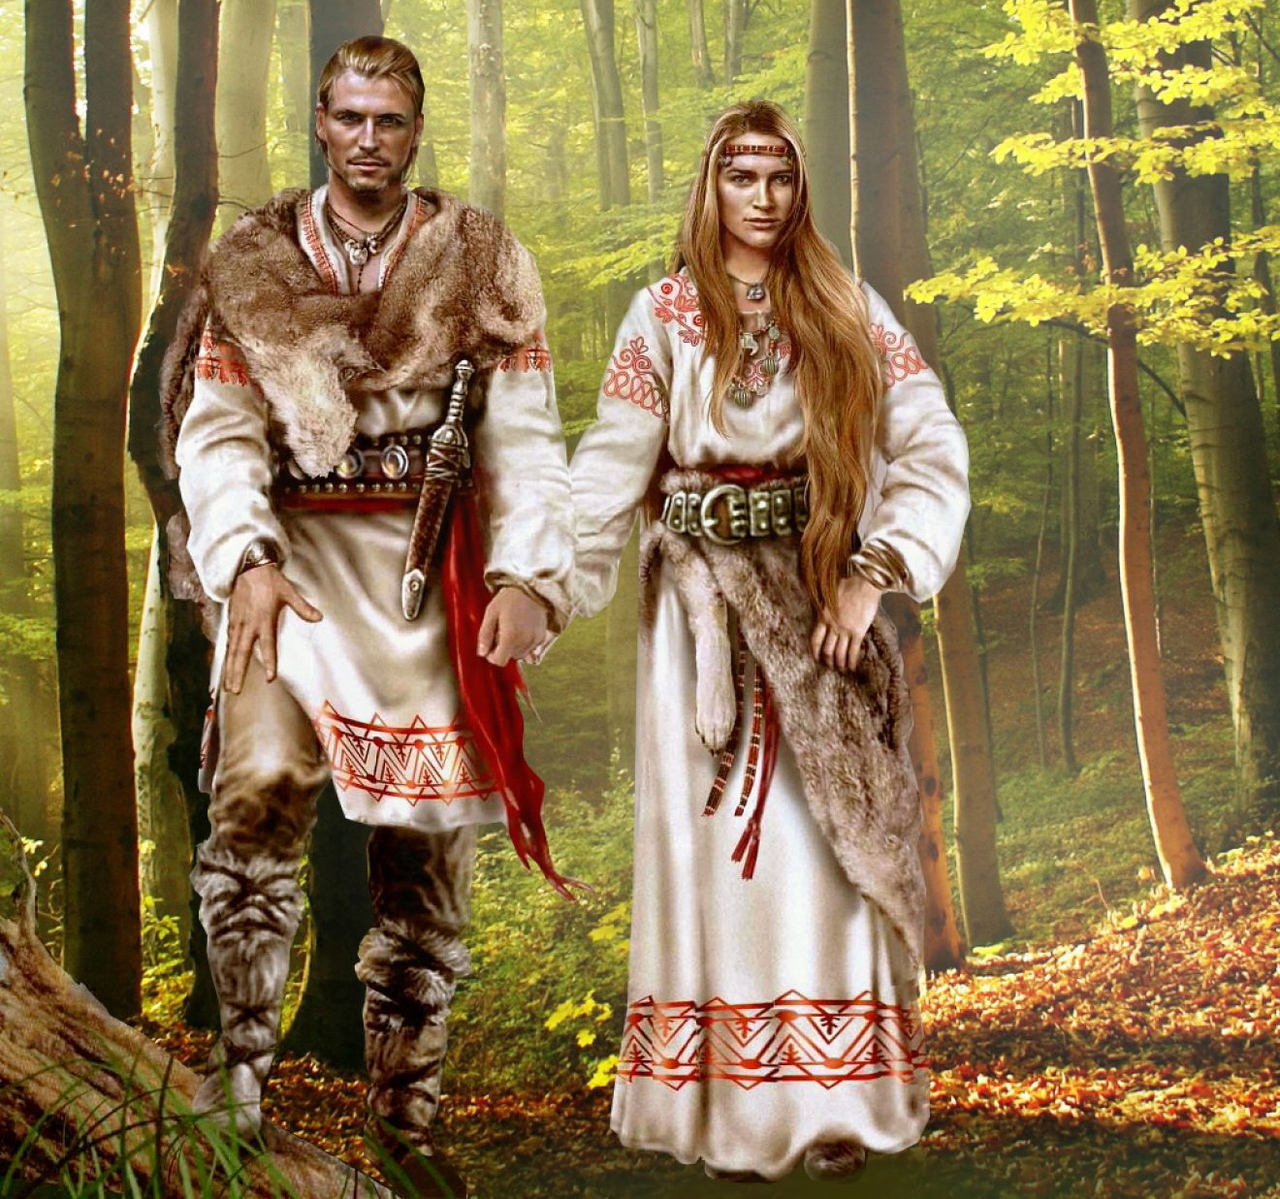 Восточно славянские народы